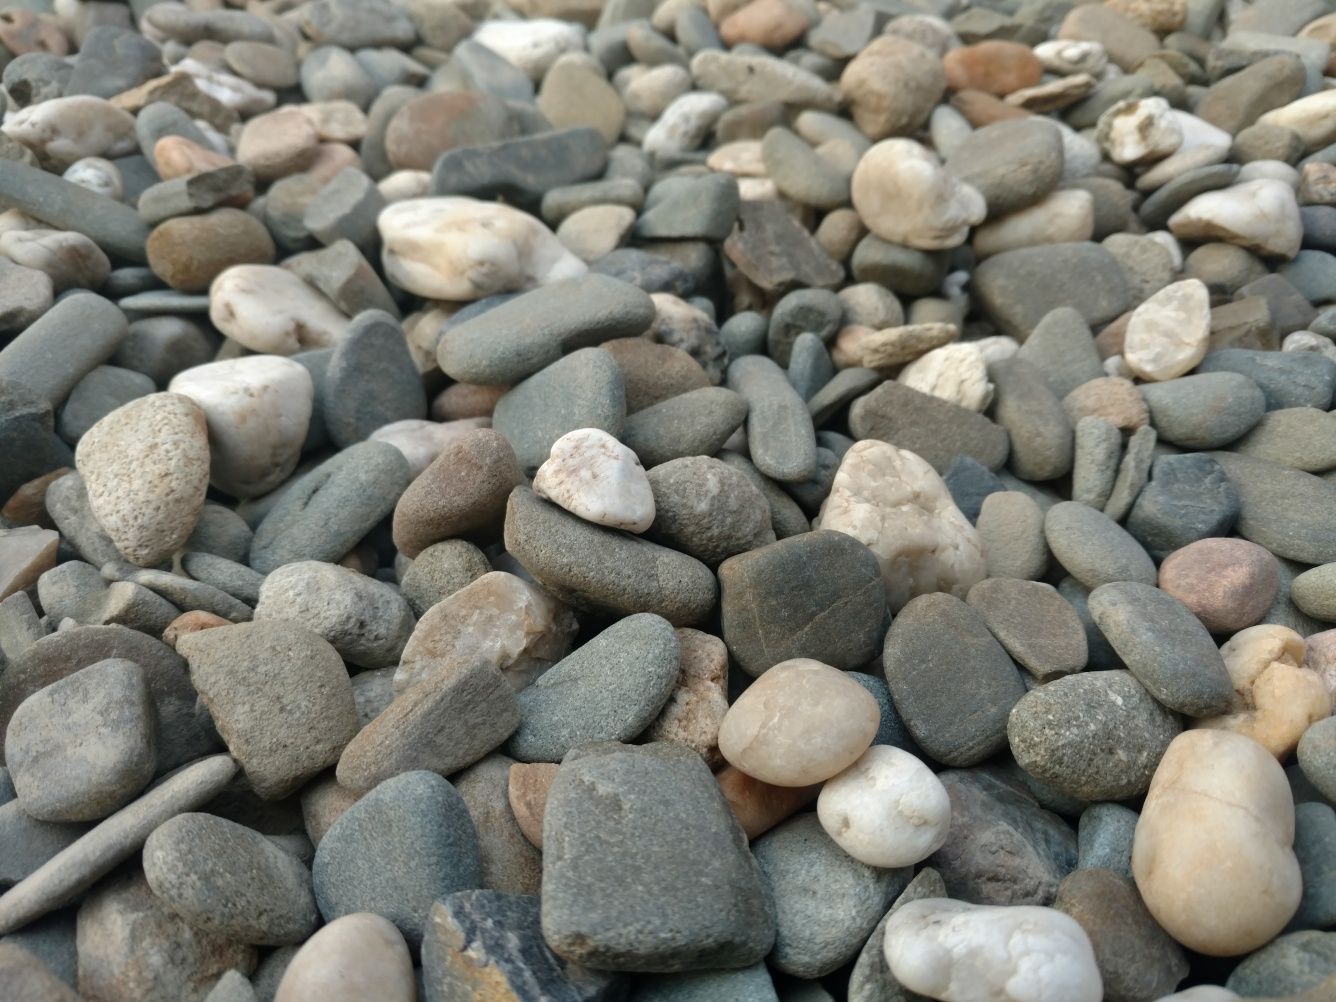 Żwir do drenażu 8-16, 16-32 kamień drenażowy piasek kruszywo grys